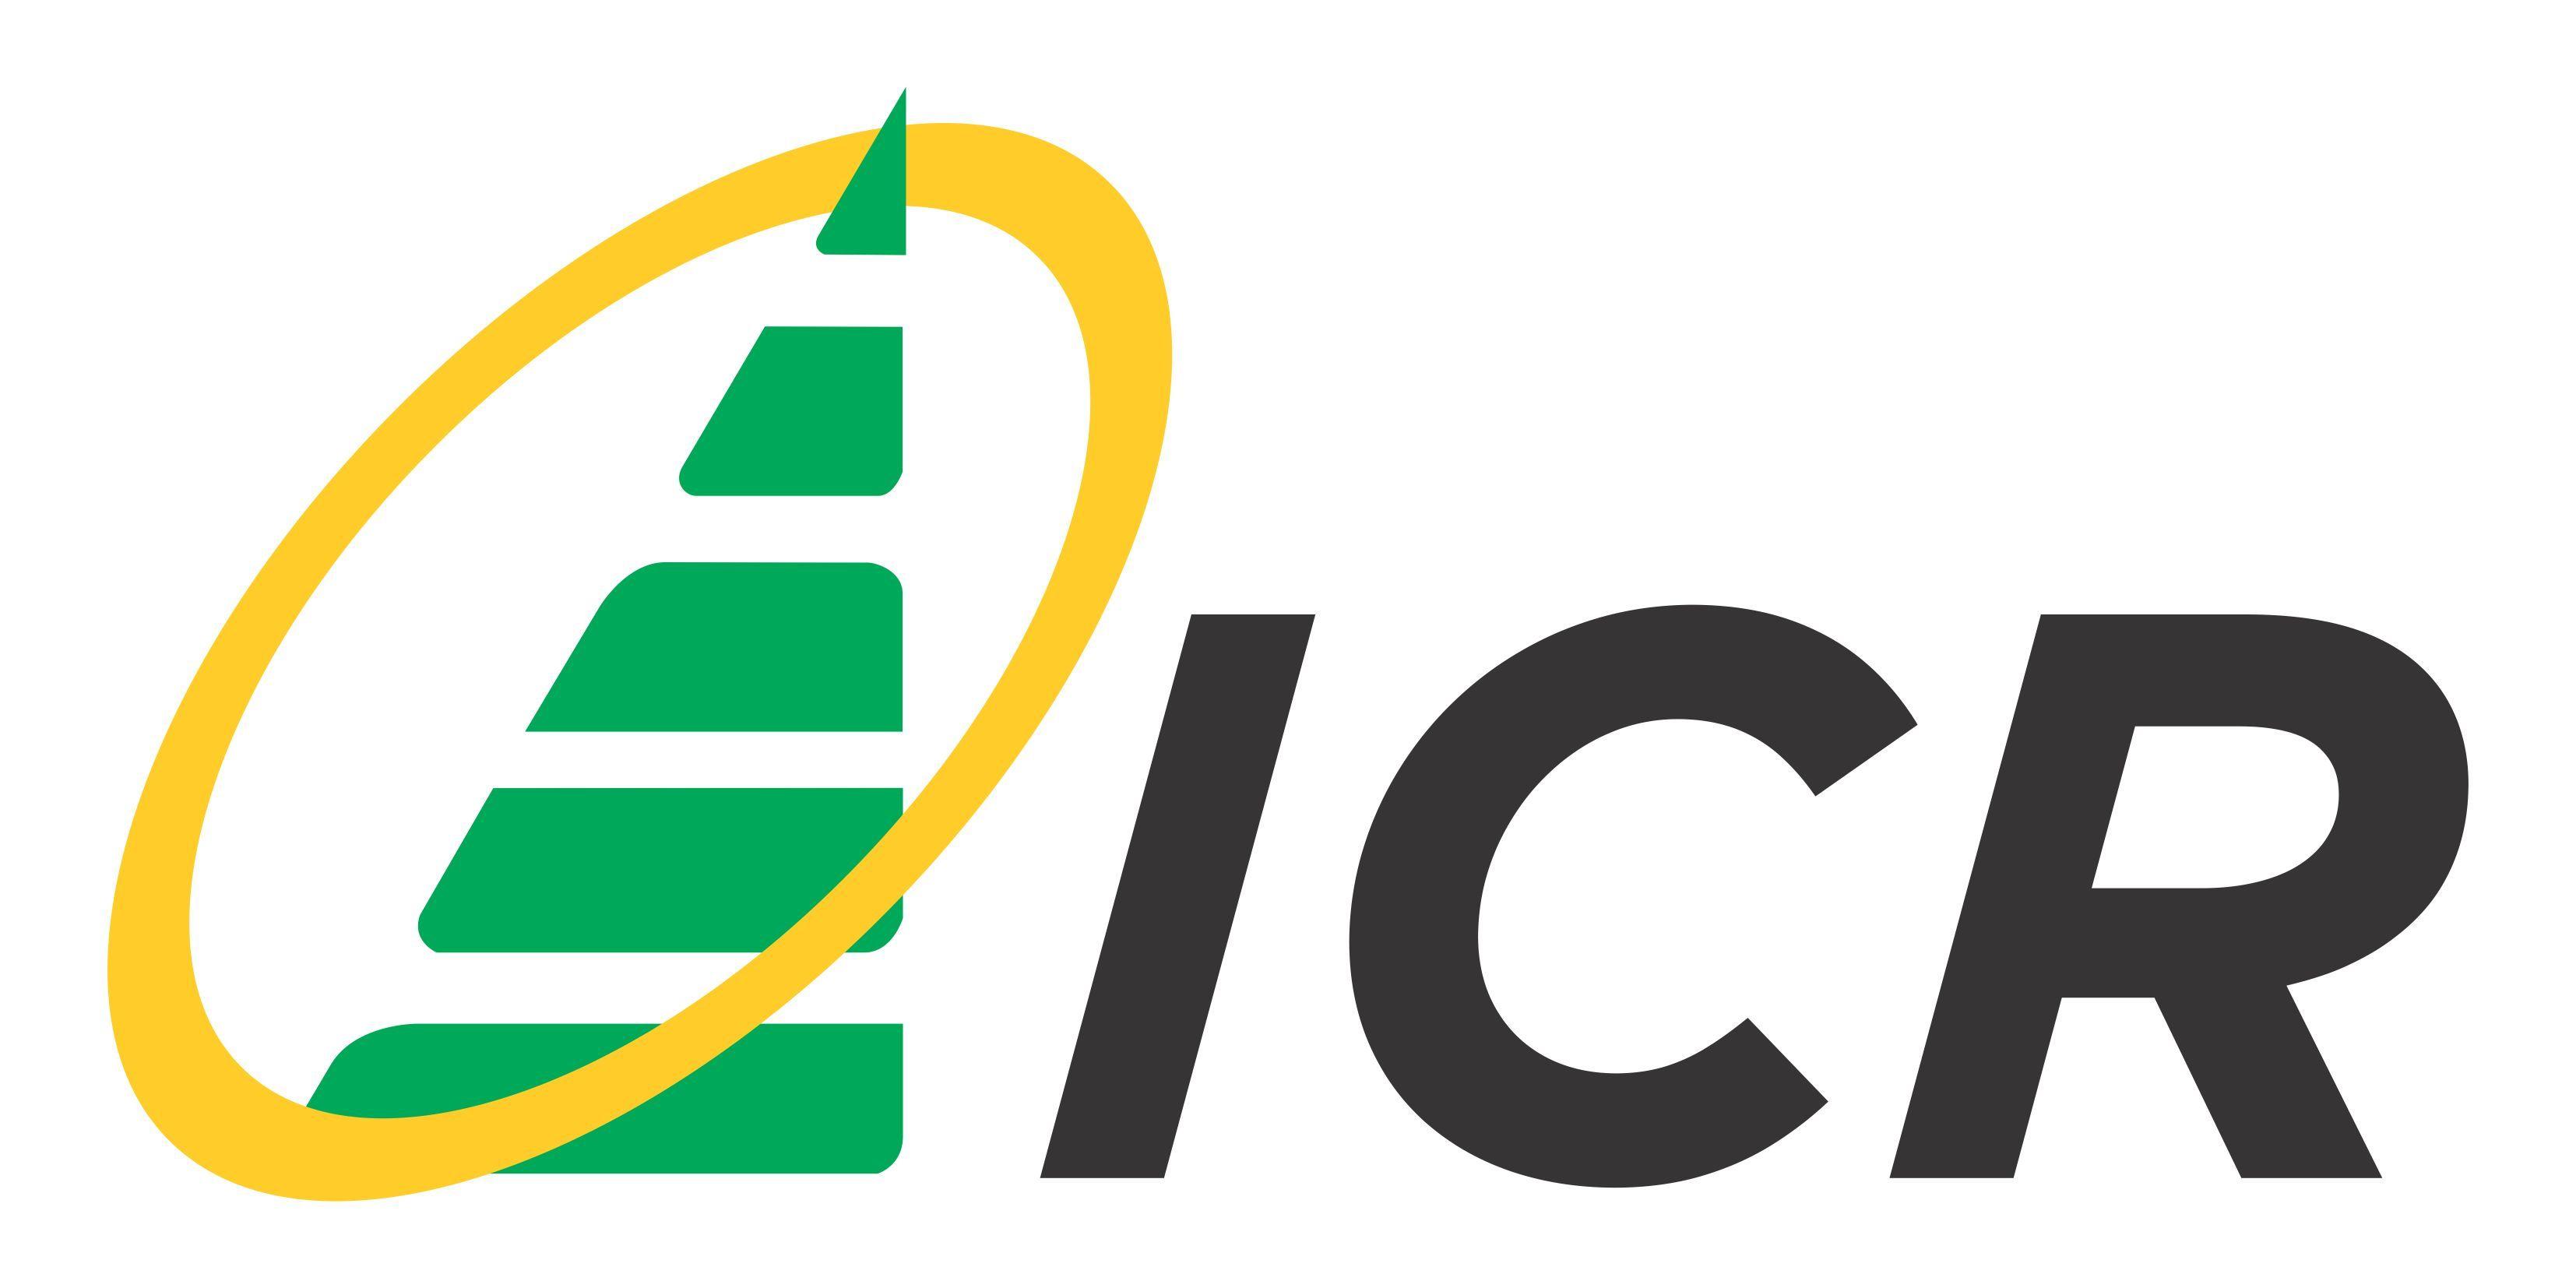 Perumahan Logo - Gallery. Design Logo untuk Perusahaan Developer Perumahan